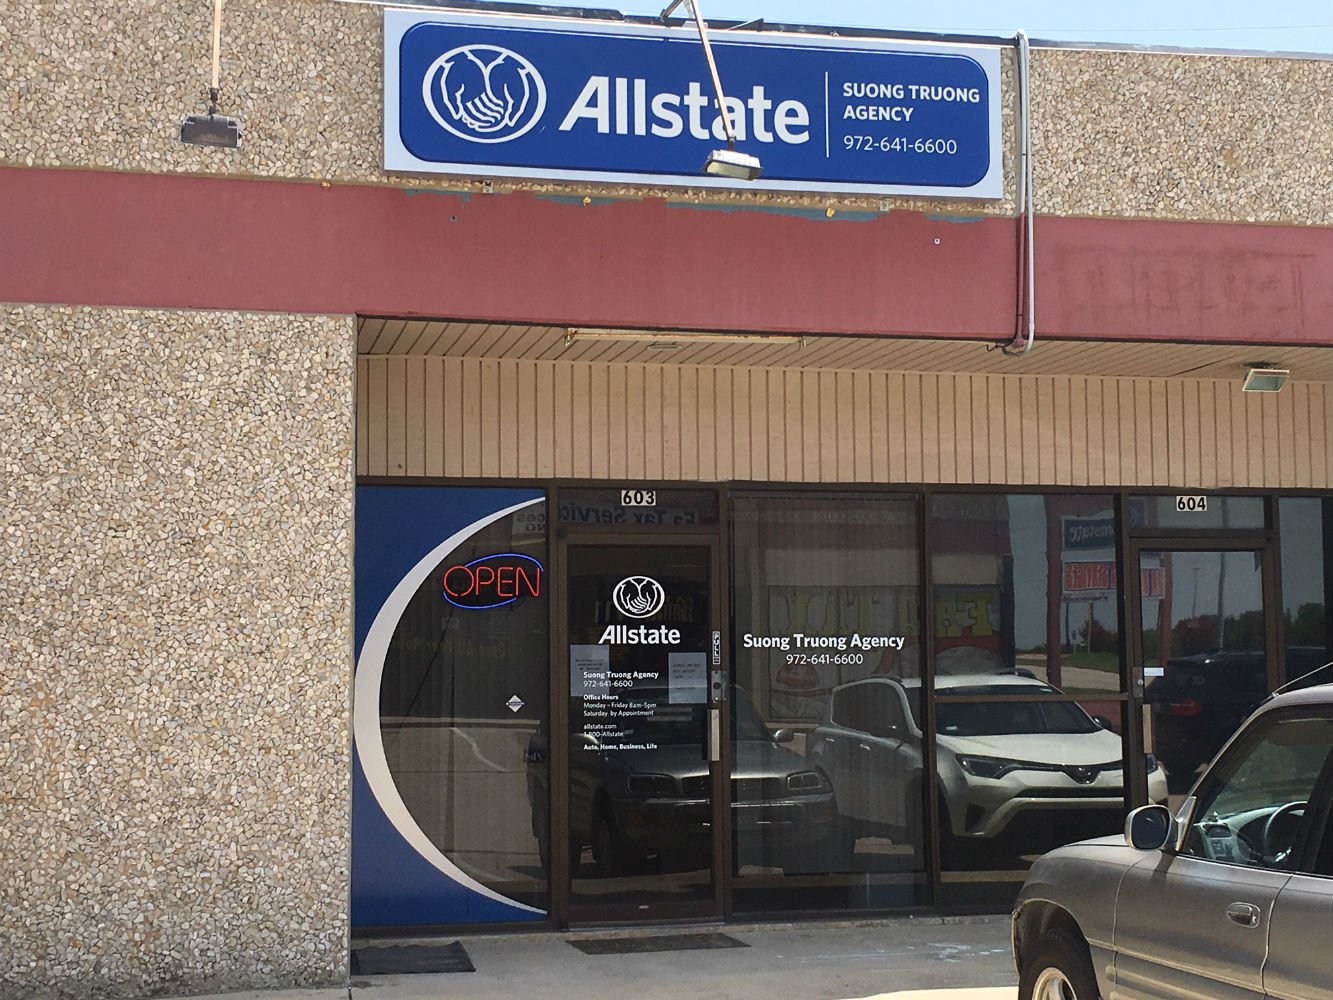 Allstate Car Insurance in Grand Prairie, TX Suong